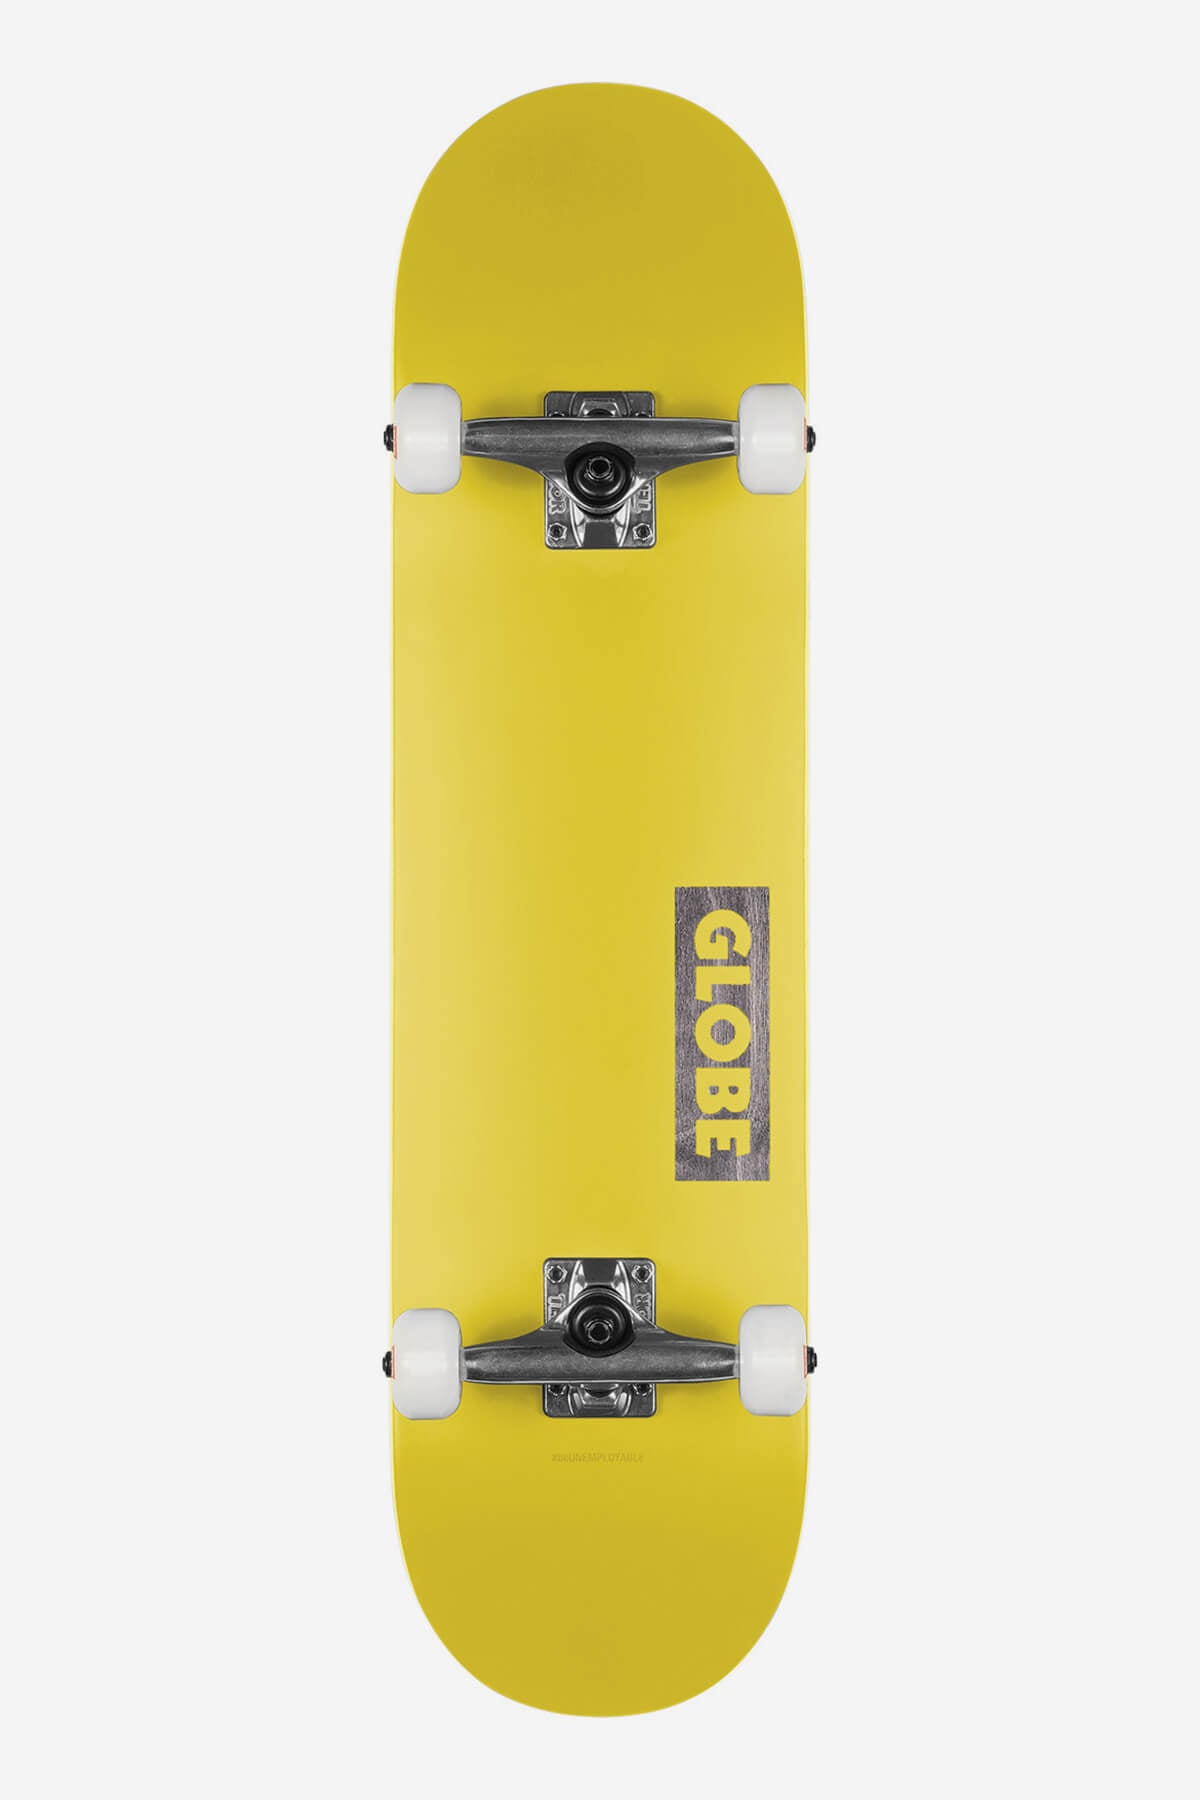 Globe Skateboard completen Goodstock 7.75" Compleet Skateboard in Neon Yellow